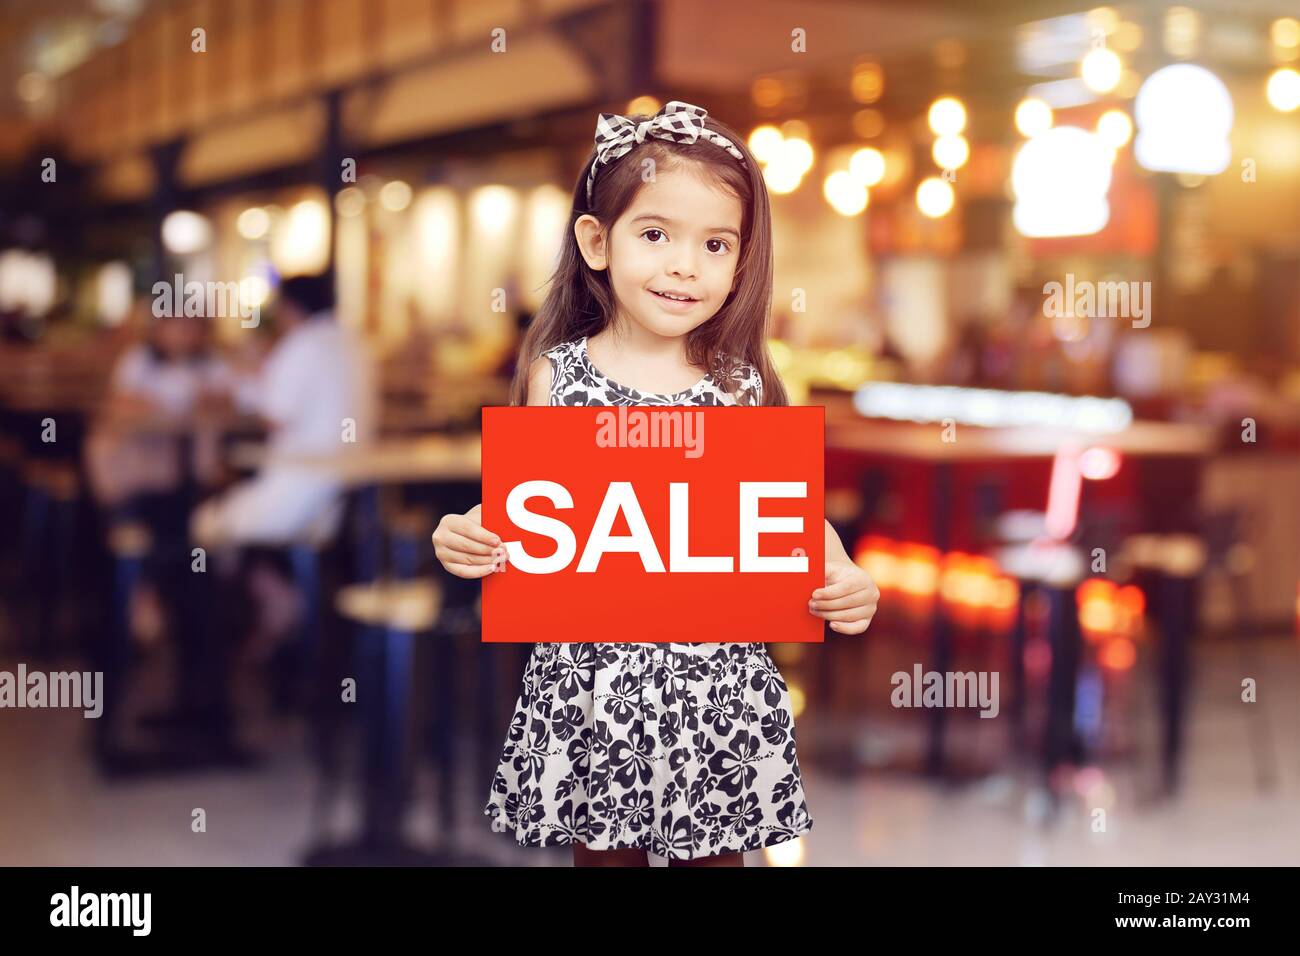 promotion remise vente pour concept de boutique : adorable fille tenant le signe rouge avec vente de texte en couleur blanche en face de boutique, restaurant ou café Banque D'Images